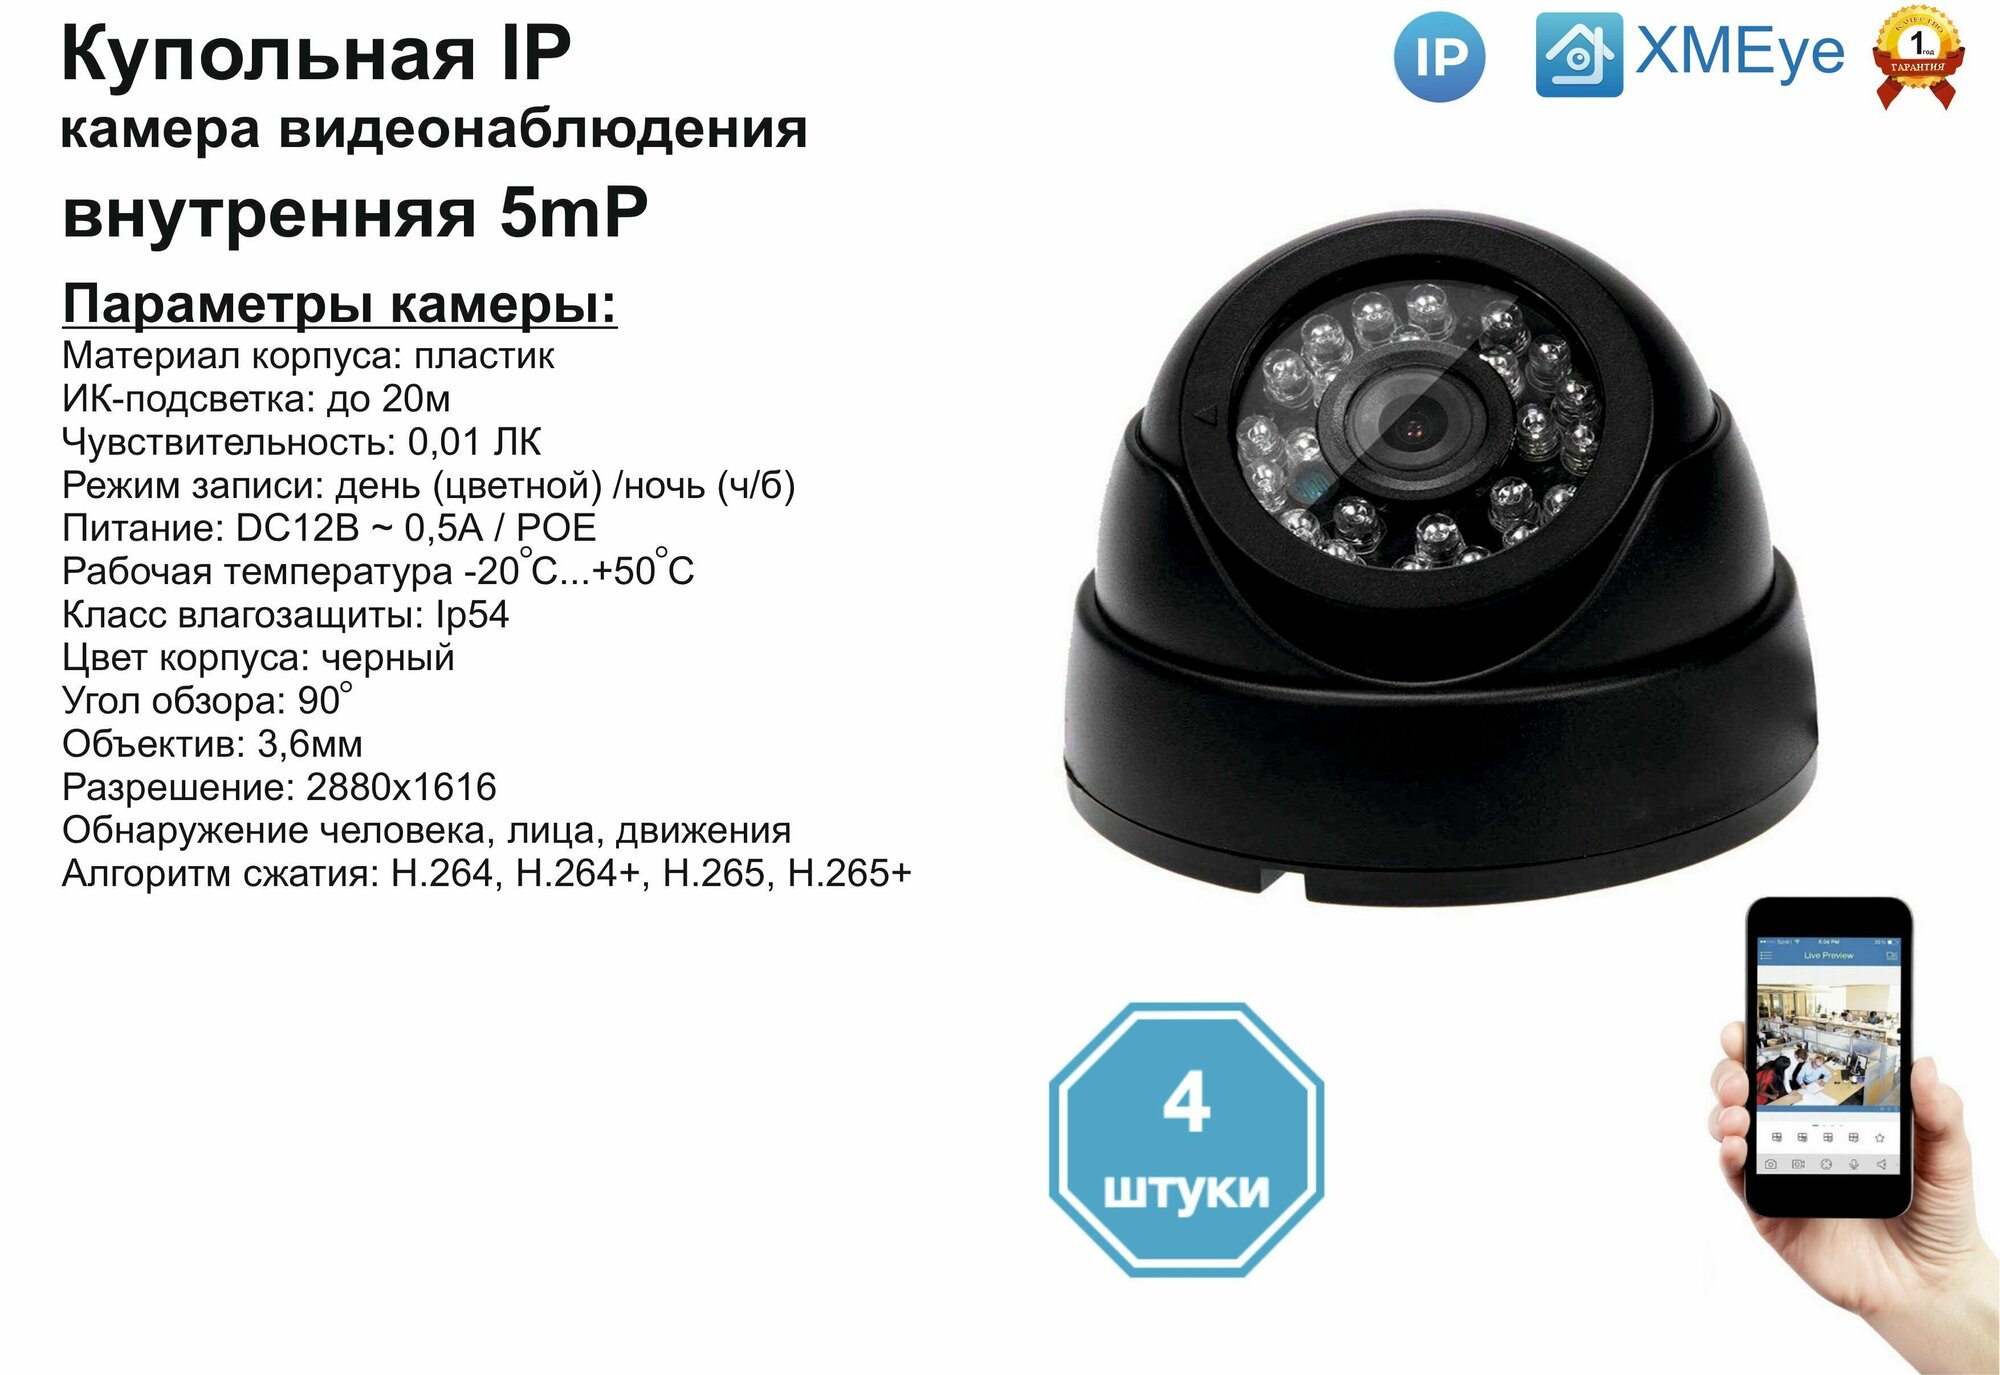 (4шт) DVB300IP5MP(POE). Внутренняя IP камера 5мП с ИК до 20м.